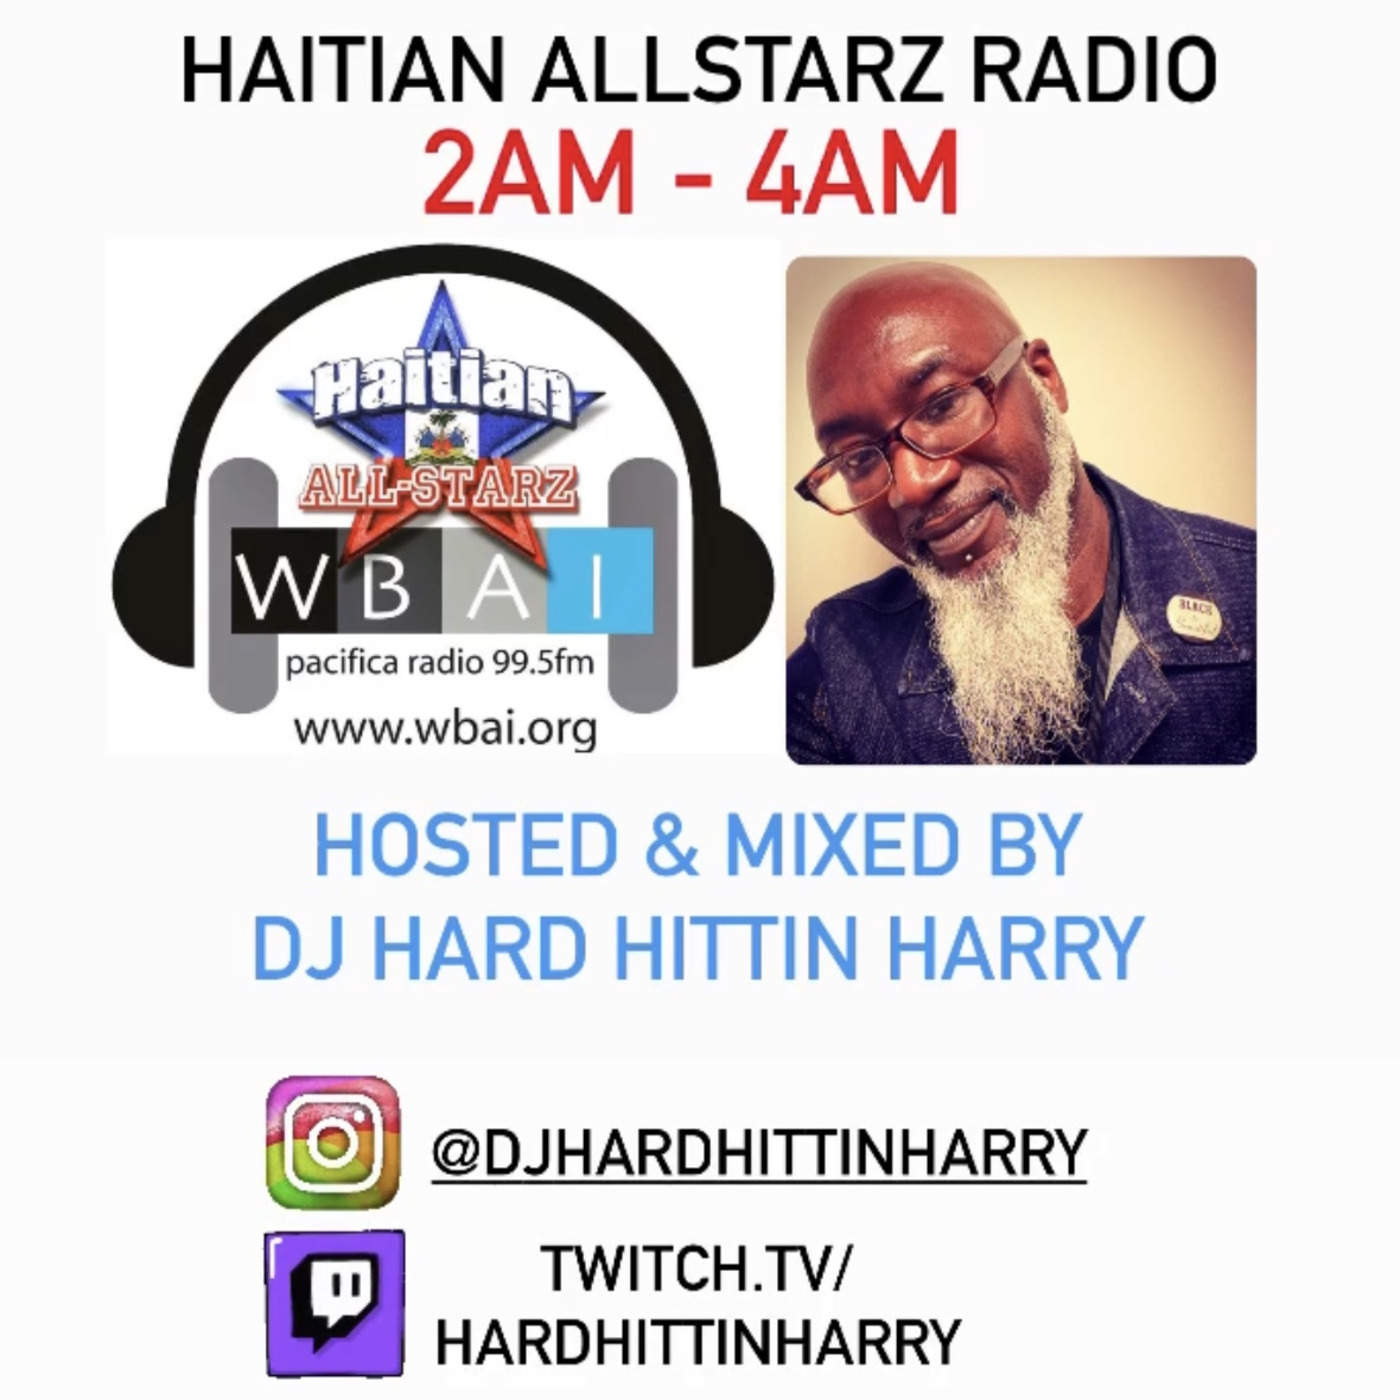 Episode 10: HAITIAN ALL-STARZ RADIO - WBAI 99.5 FM - EPISODE #232 - HARD HITTIN HARRY